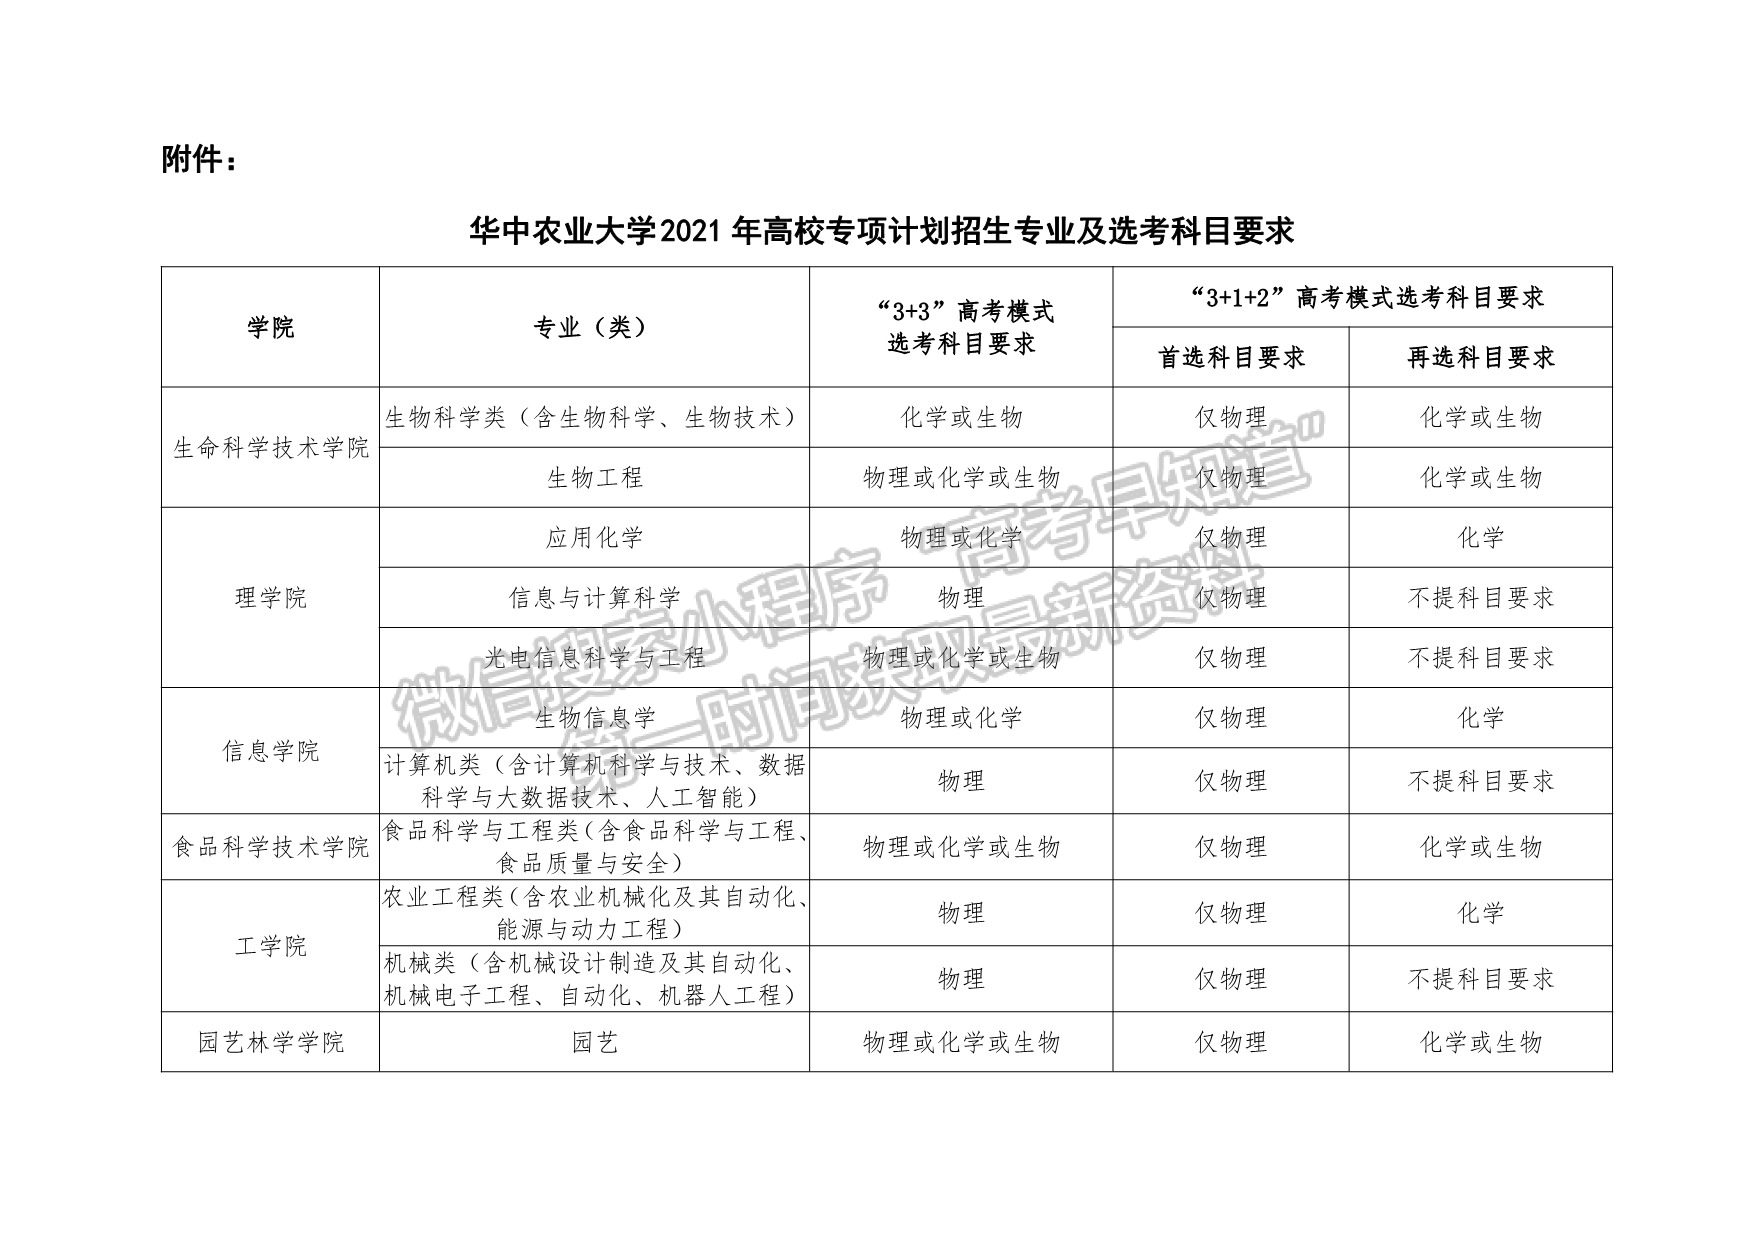 华中农业大学2021年高校专项计划招生简章 